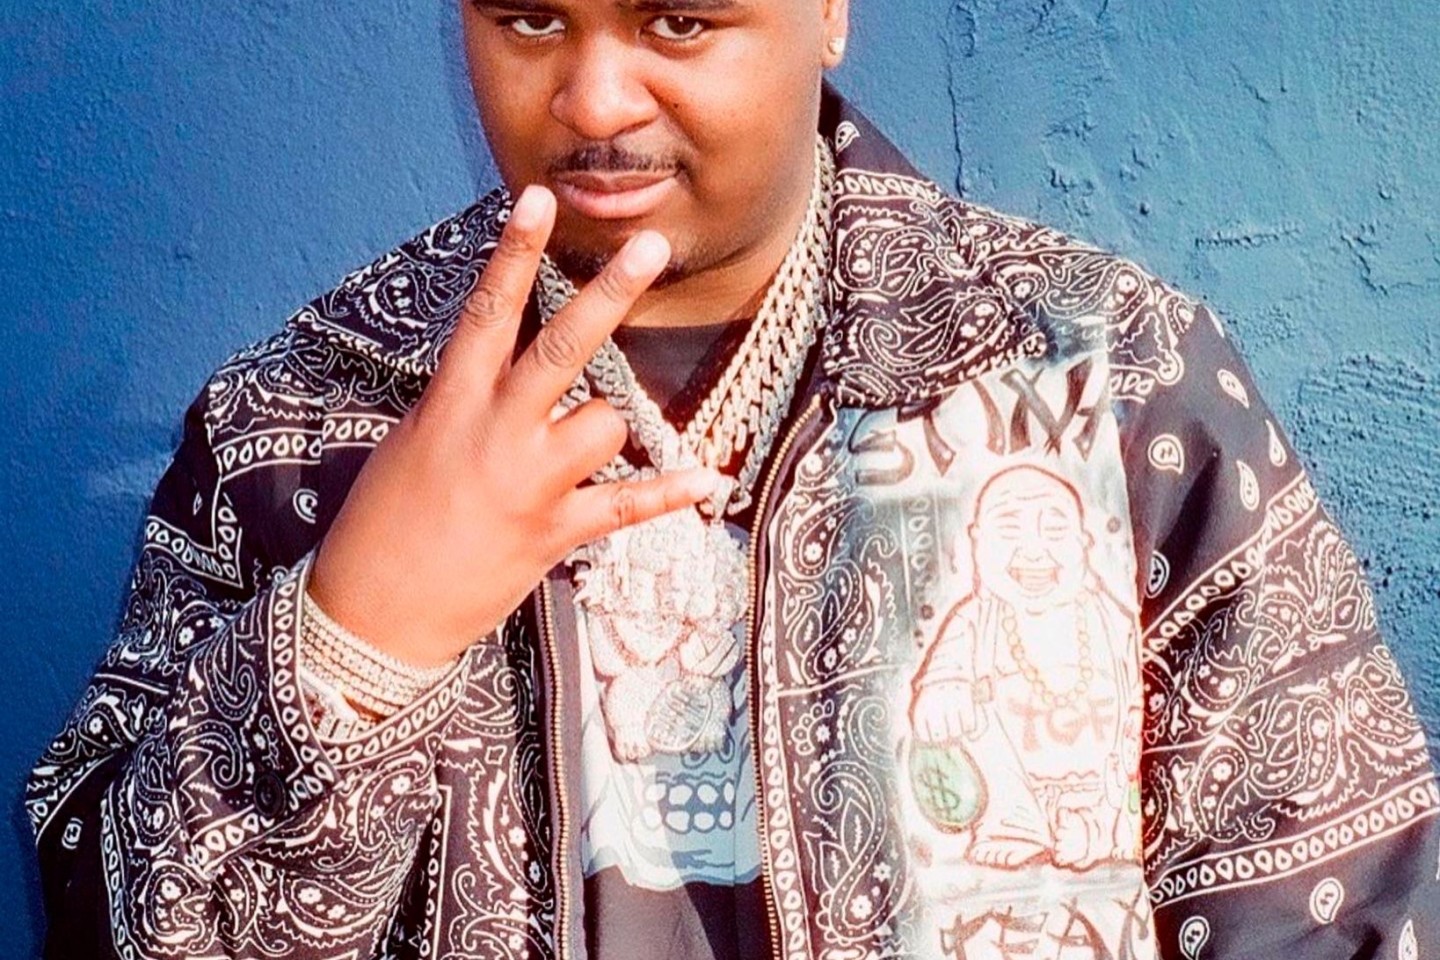 Der US-Rapper Drakeo the Ruler ist bei einem Musikfestival in Los Angeles hinter der Bühne erstochen worden.